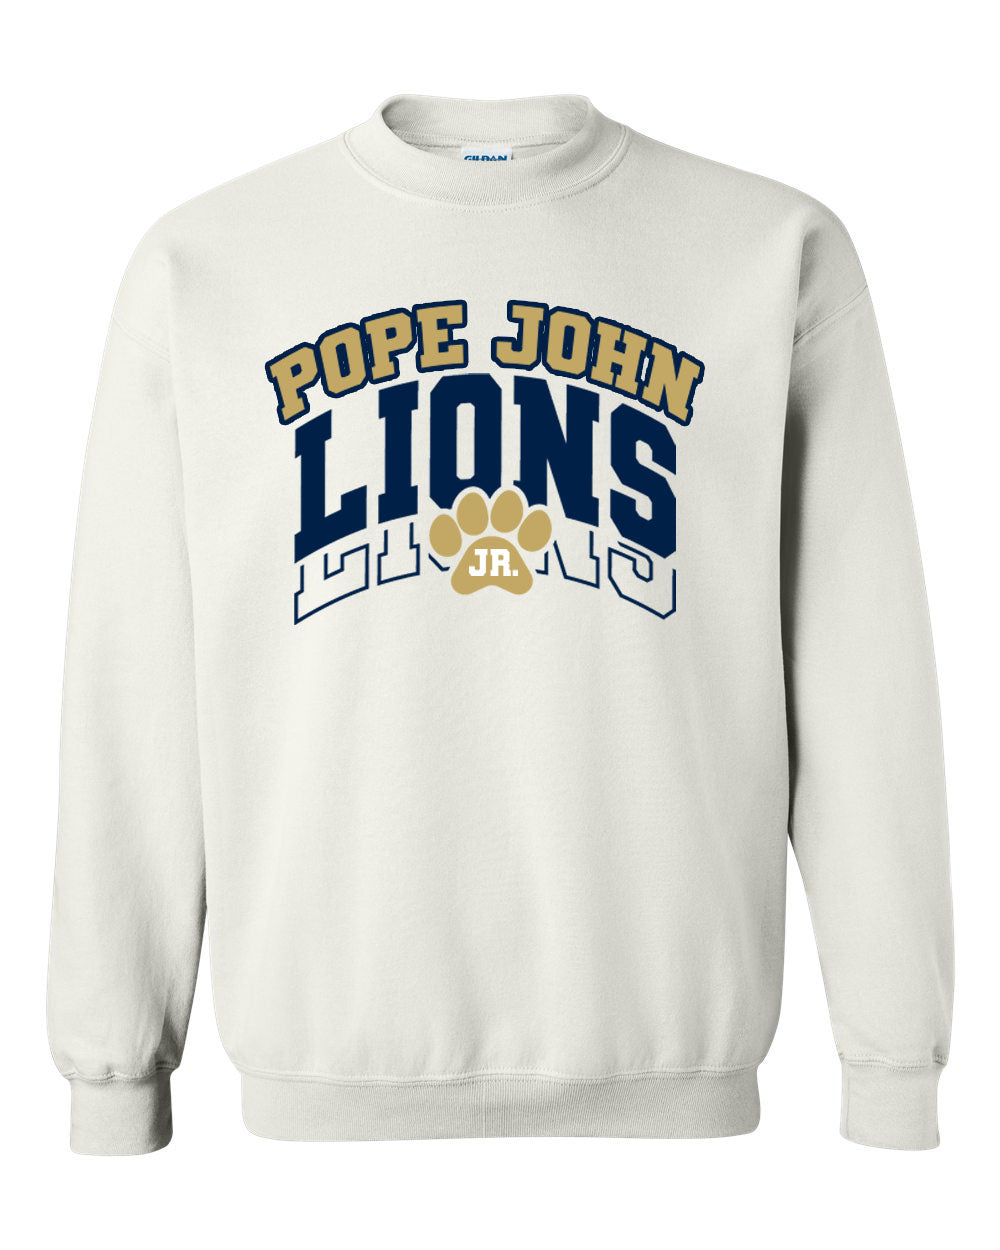 Lions Cheer Design 1 non hooded sweatshirt